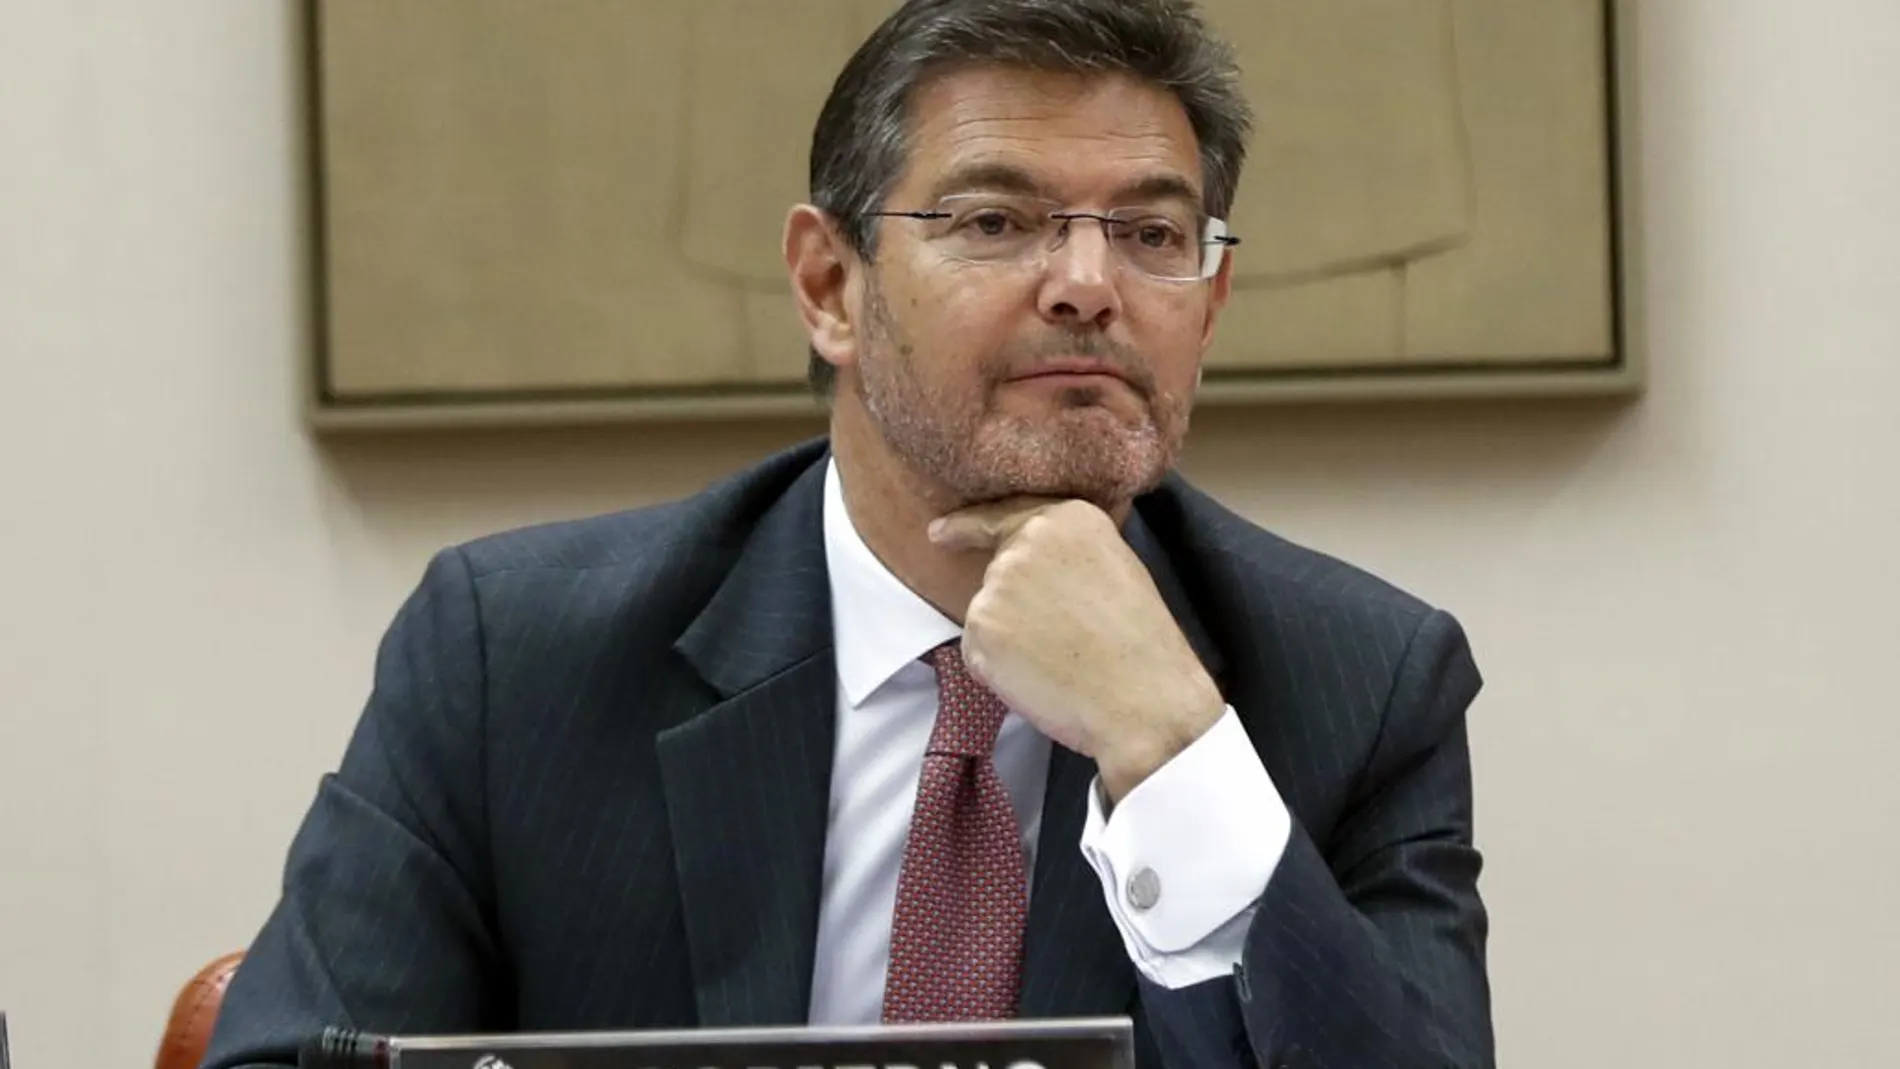 El ministro de Justicia, Rafael Catalá, durante su comparecencia ayer ante la Comisión de Justicia del Congreso de los Diputados.